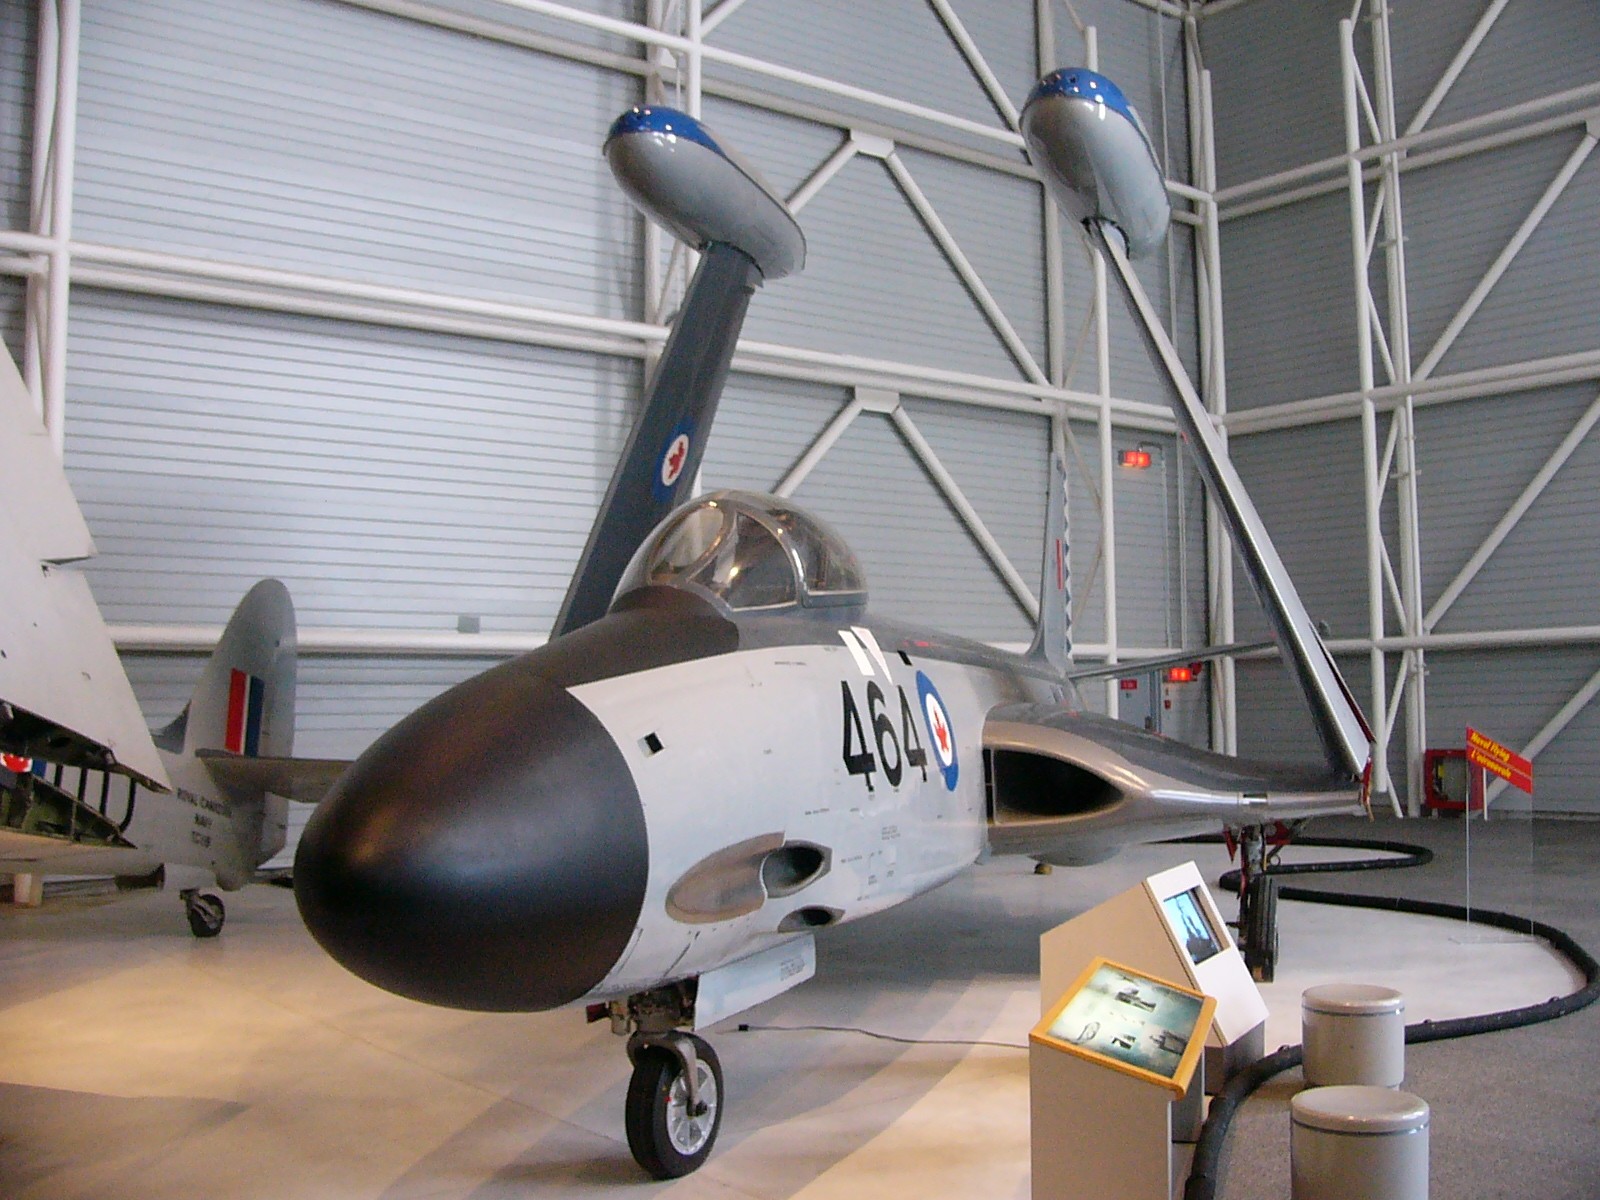 McDonnell F2H Banshee: The Carrier Based Jet Fighter